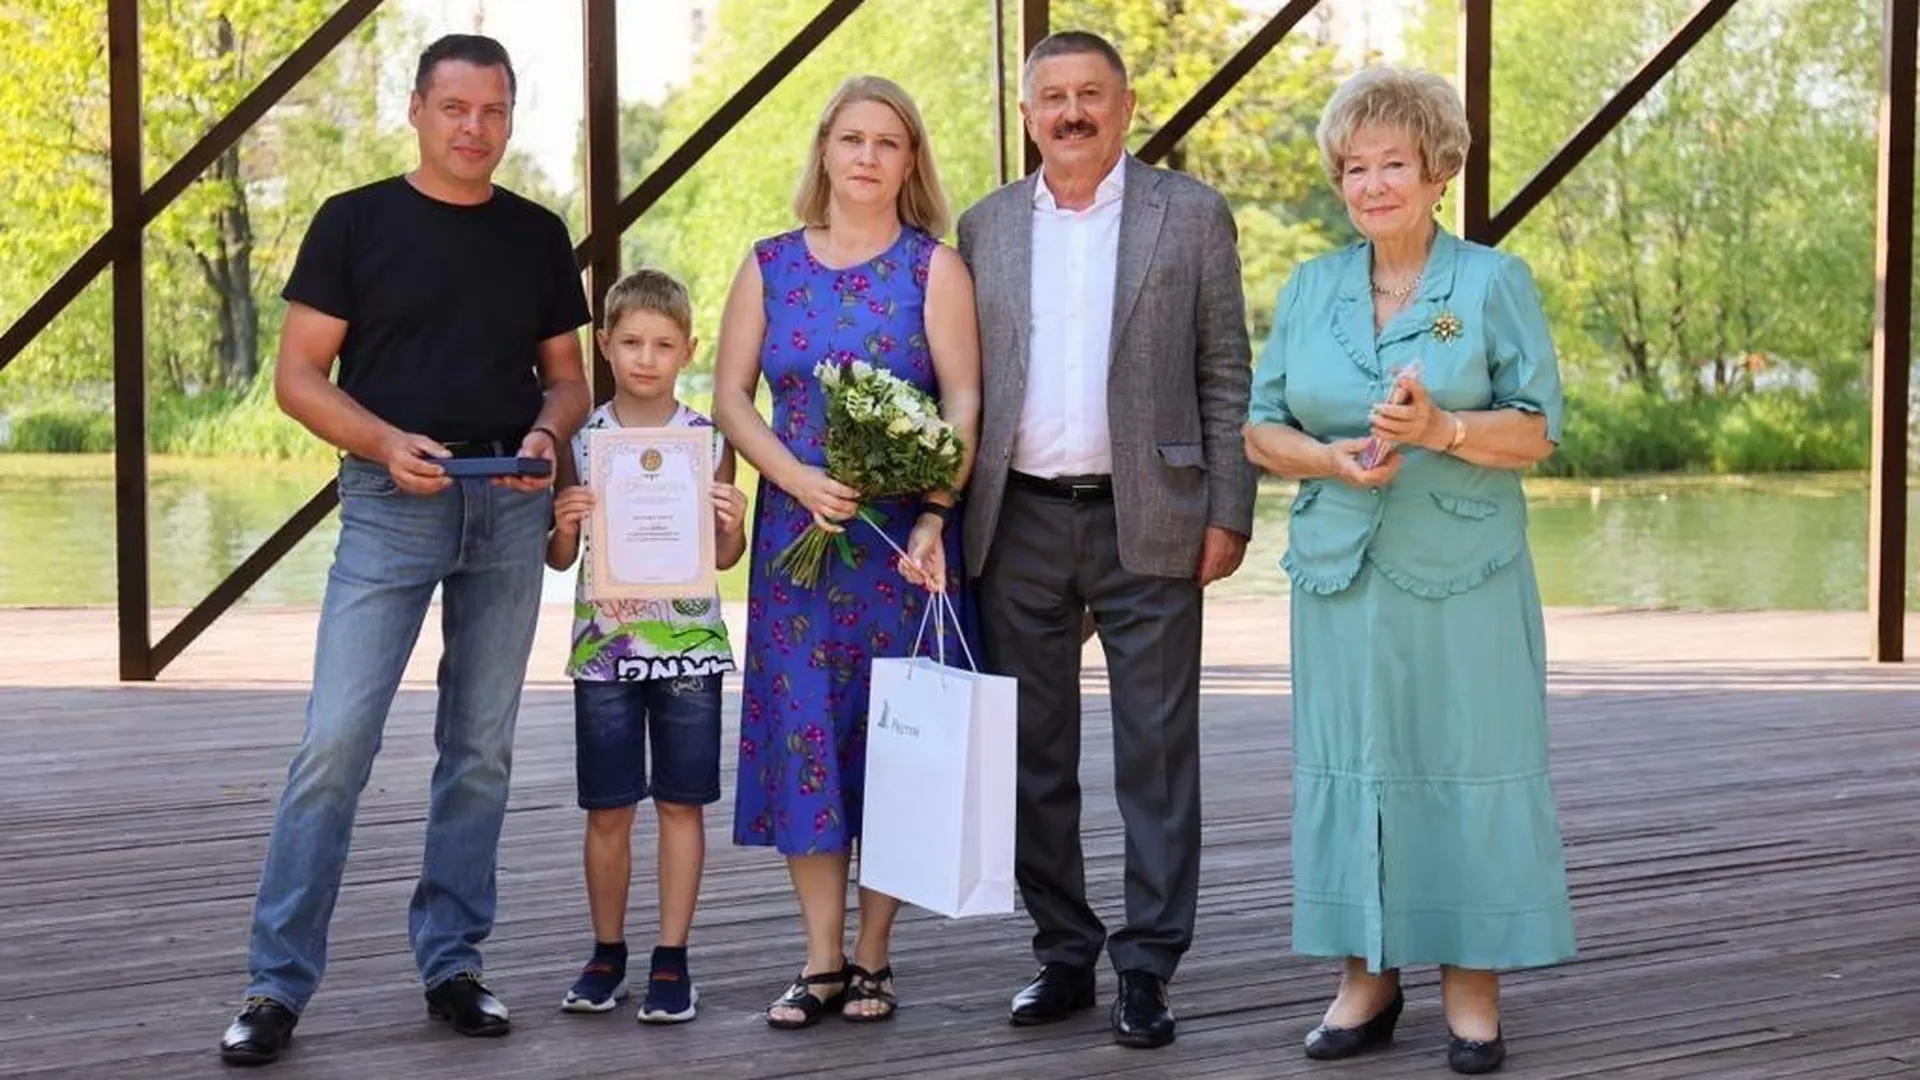 Выплату к юбилею совместной жизни получили свыше 580 семей из Балашихи и Реутова